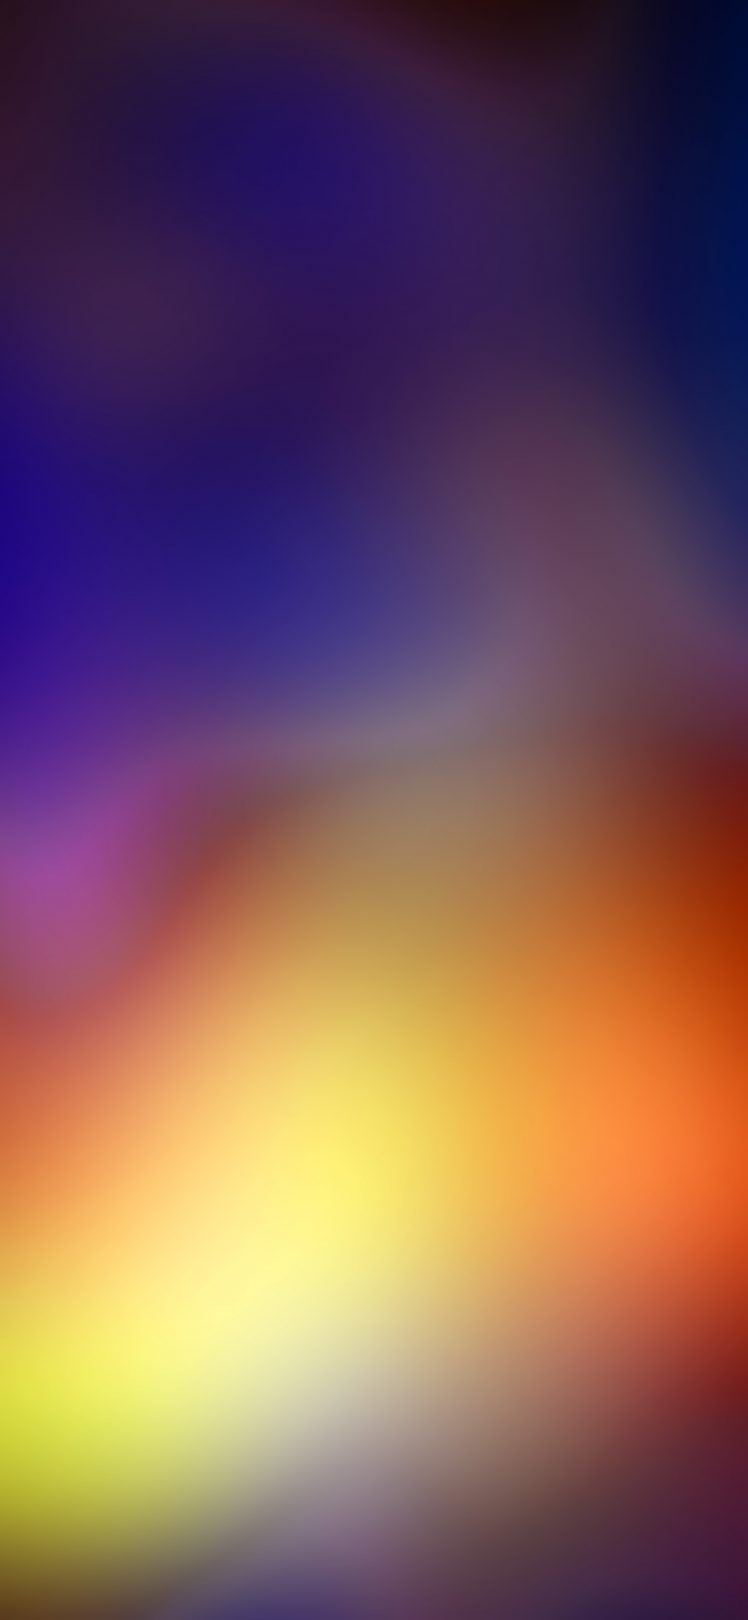 iPhone, IOS, IPad, Ipod, Vertical, Portrait display HD Wallpaper Desktop Background